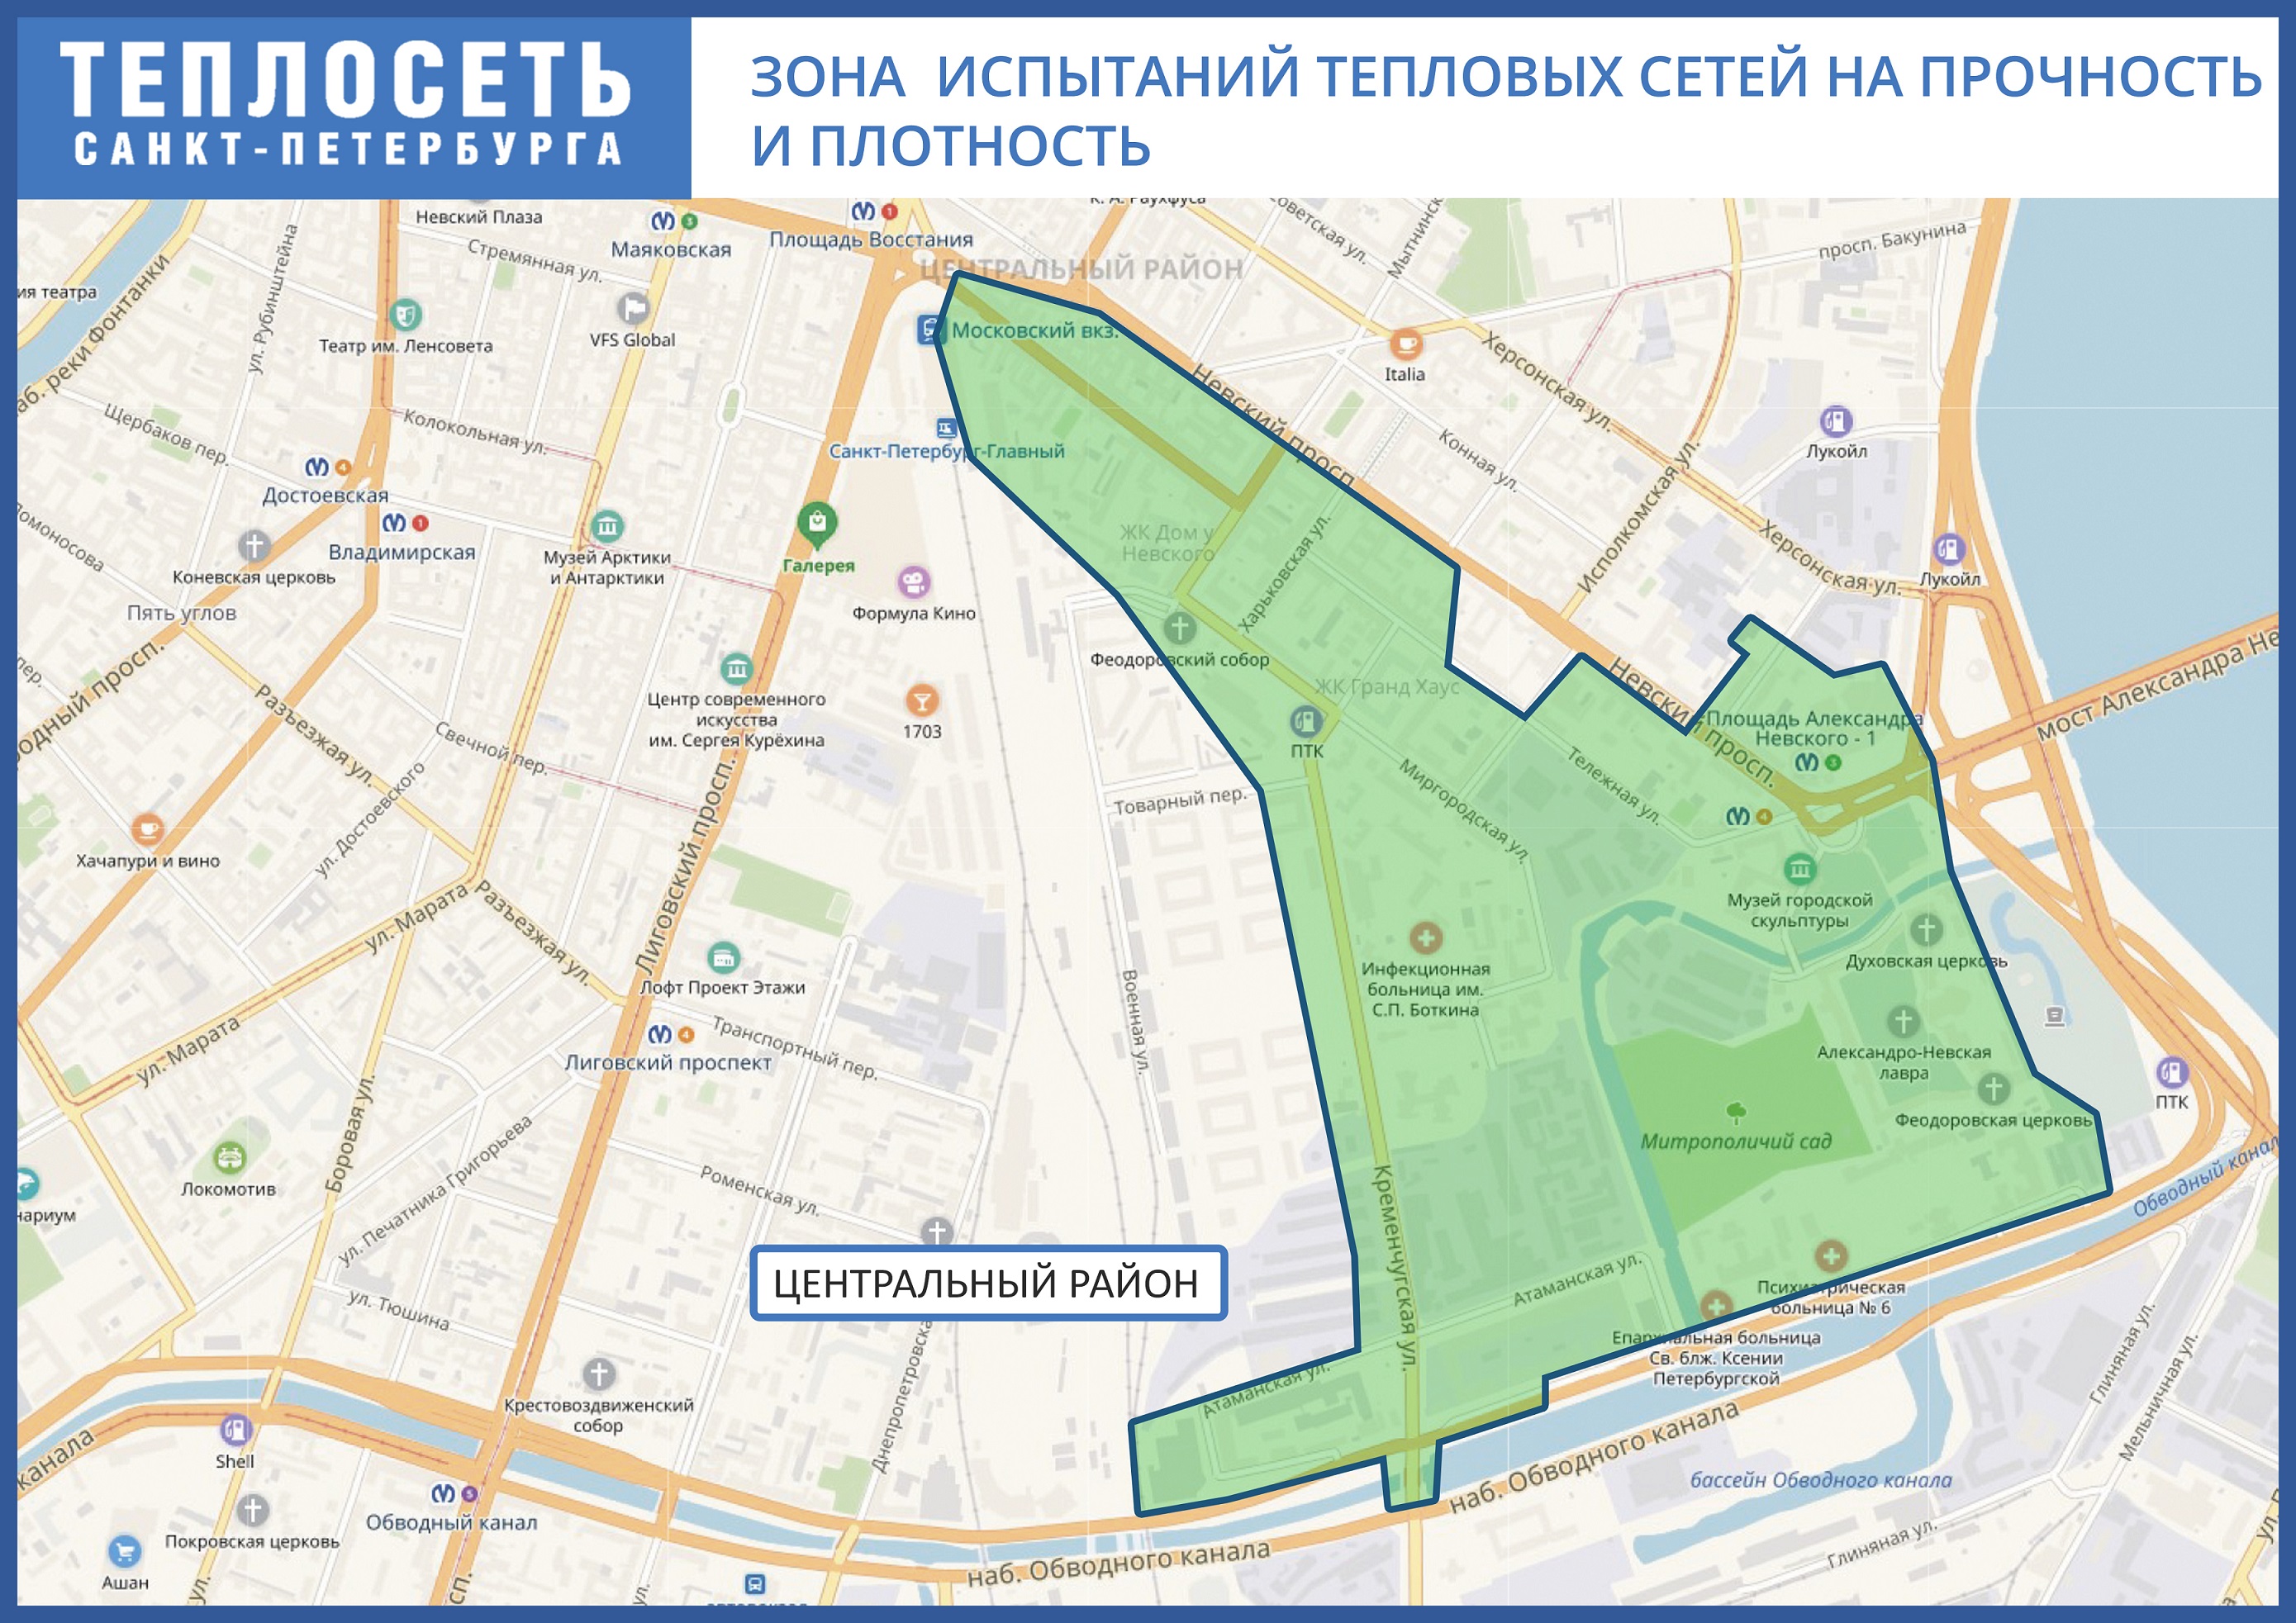 «Теплосеть Санкт-Петербурга» проведет испытания в двух районах города